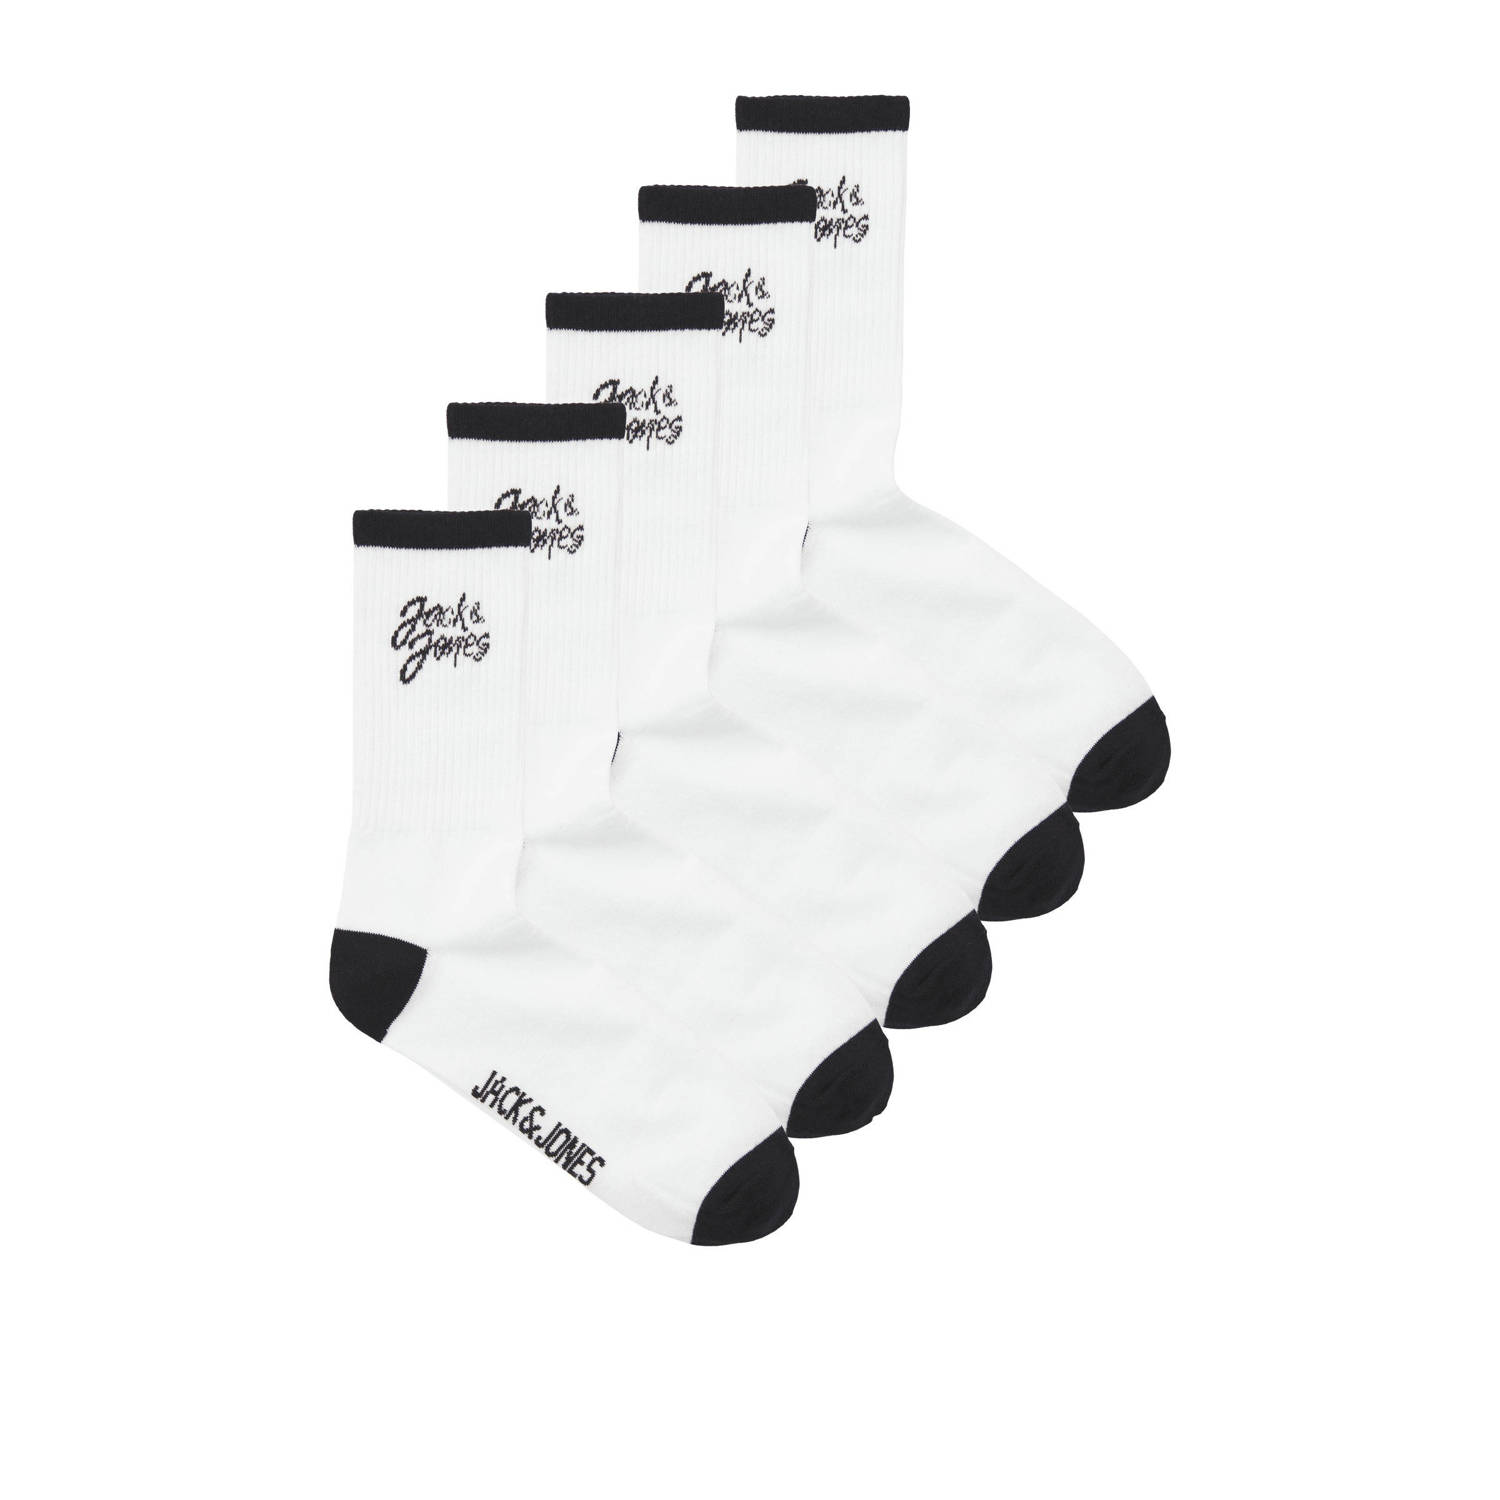 Jack & jones JUNIOR sokken set van 5 wit zwart Jongens Katoen Logo 33 37